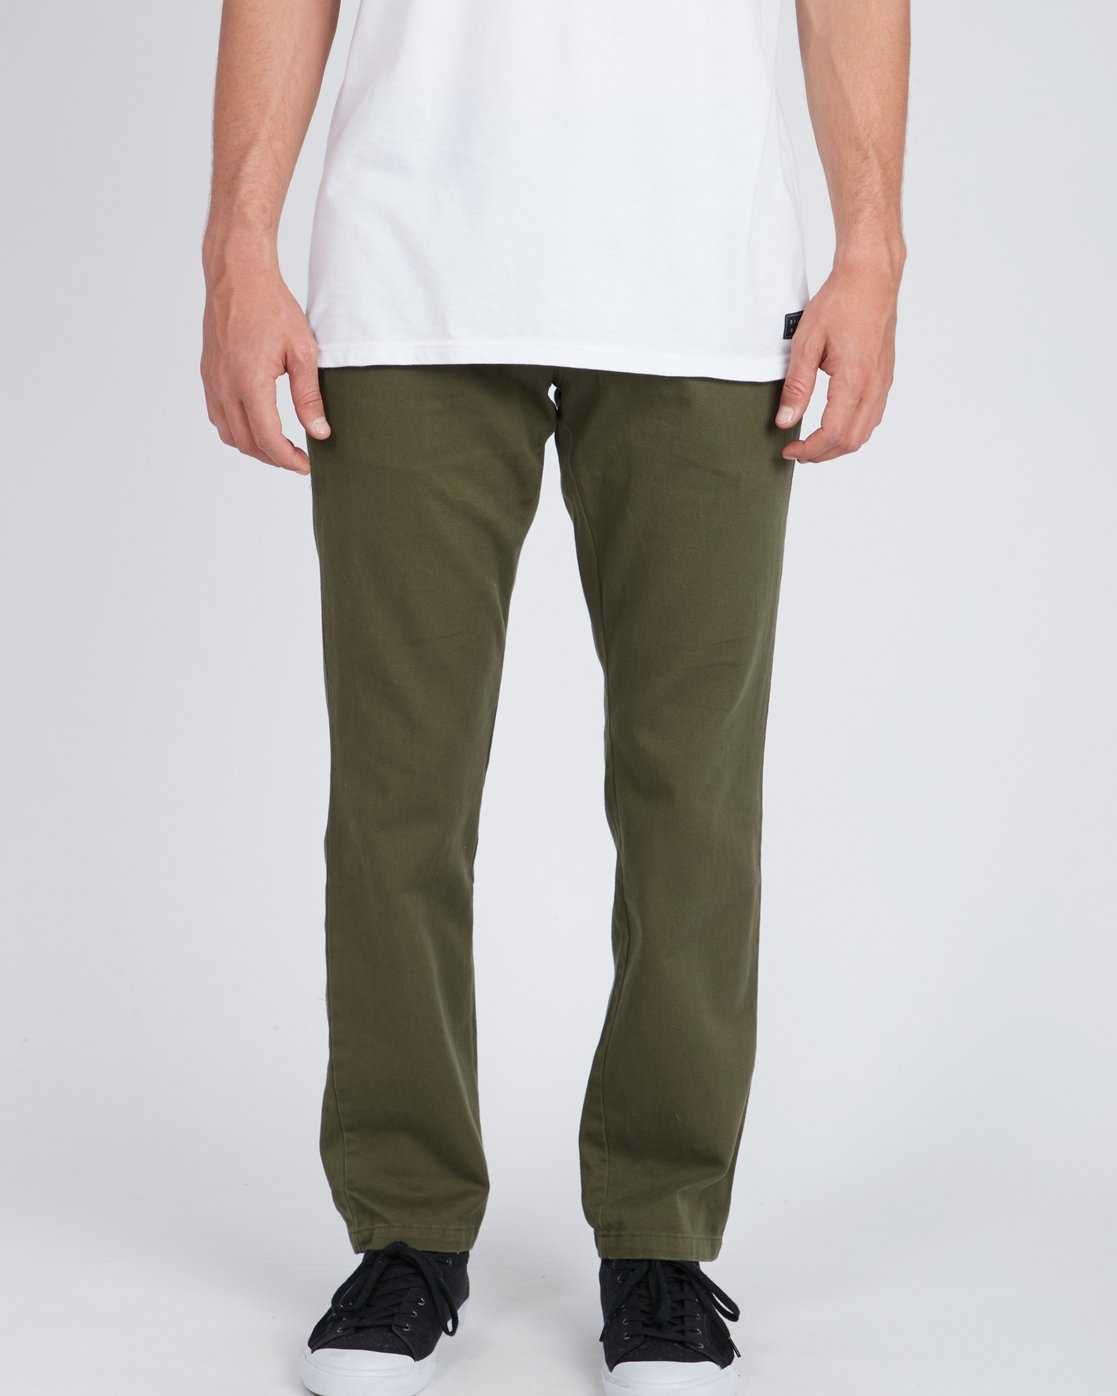 Маркови тийн/момчешки/мъжки панталони Billabong, 28 размер, за 176 см.